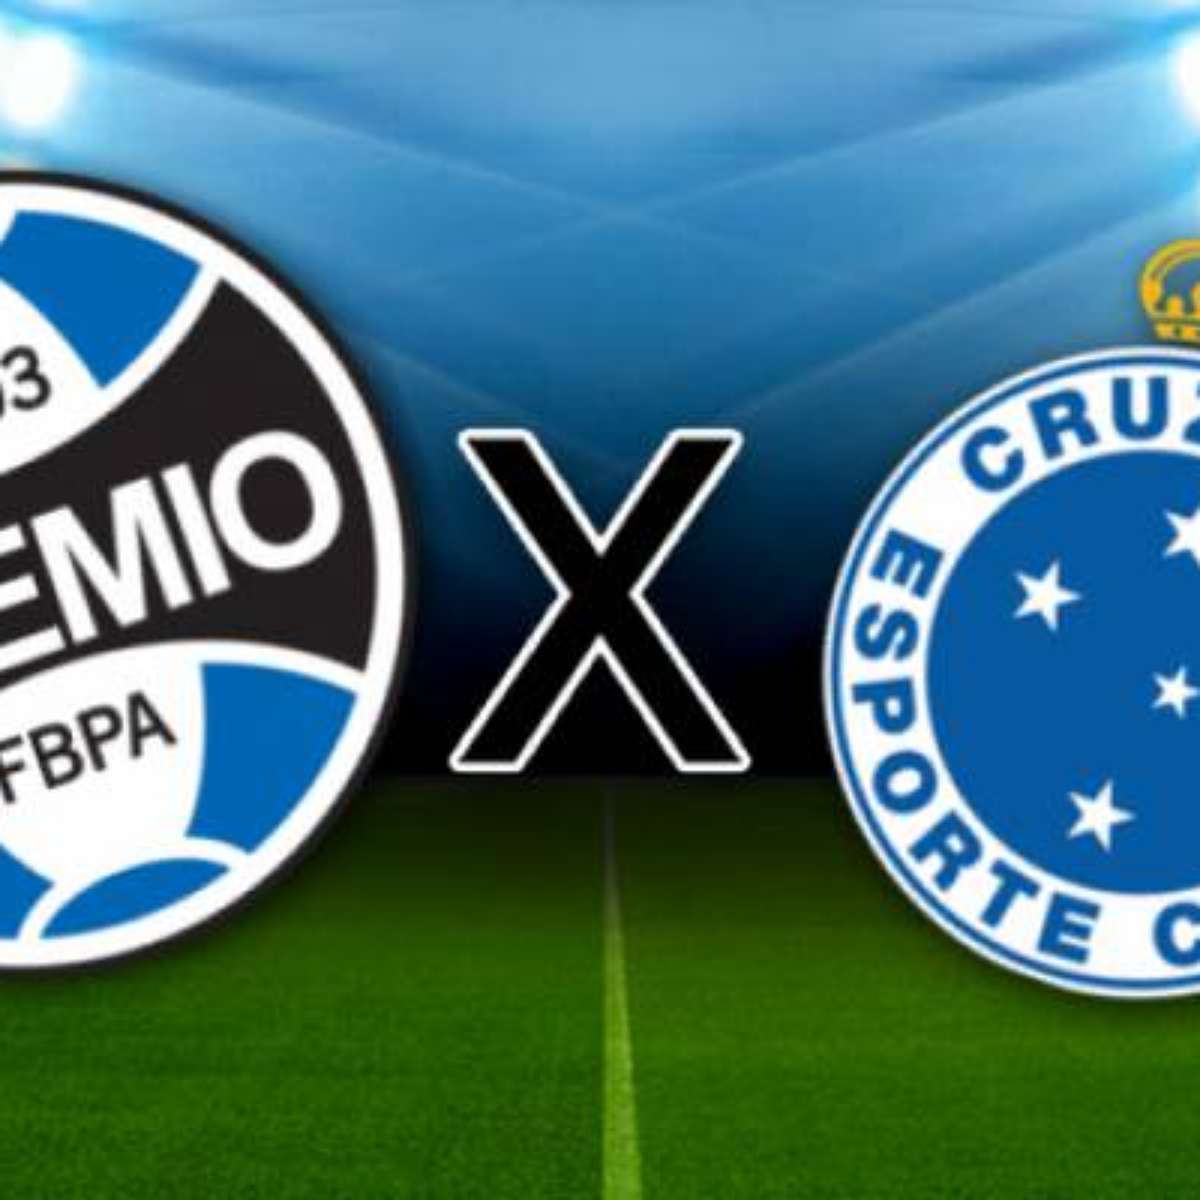 Cruzeiro vs America MG: A Clash of Minas Gerais Rivals